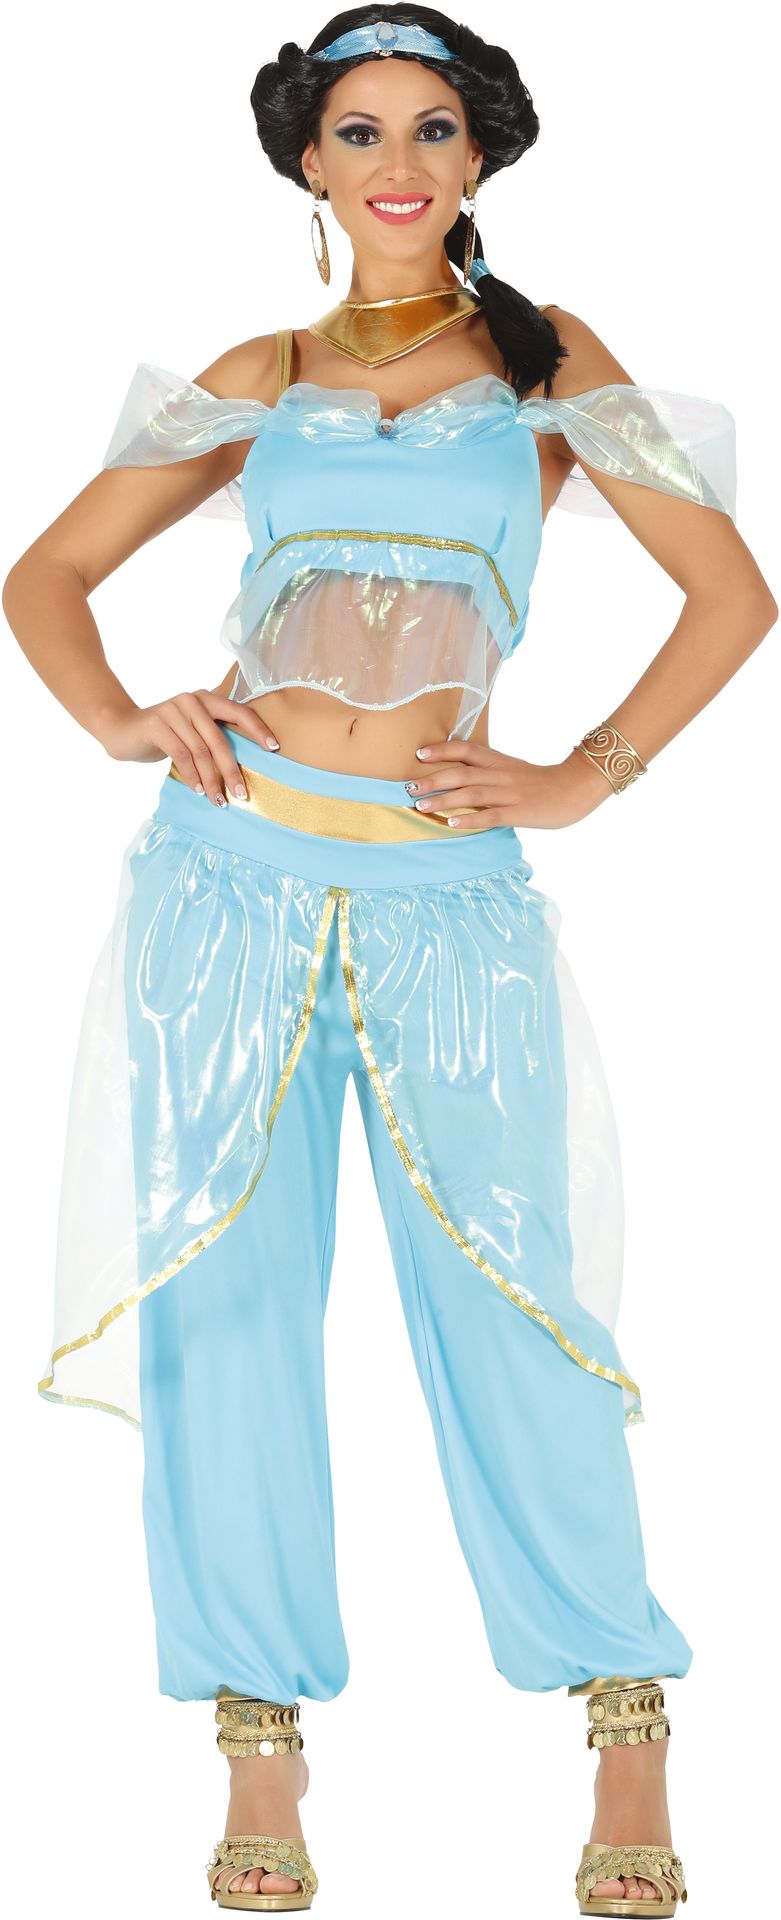 Schrijft een rapport uitspraak tennis Prinses Jasmine van Aladin kostuum | Carnavalskleding.nl